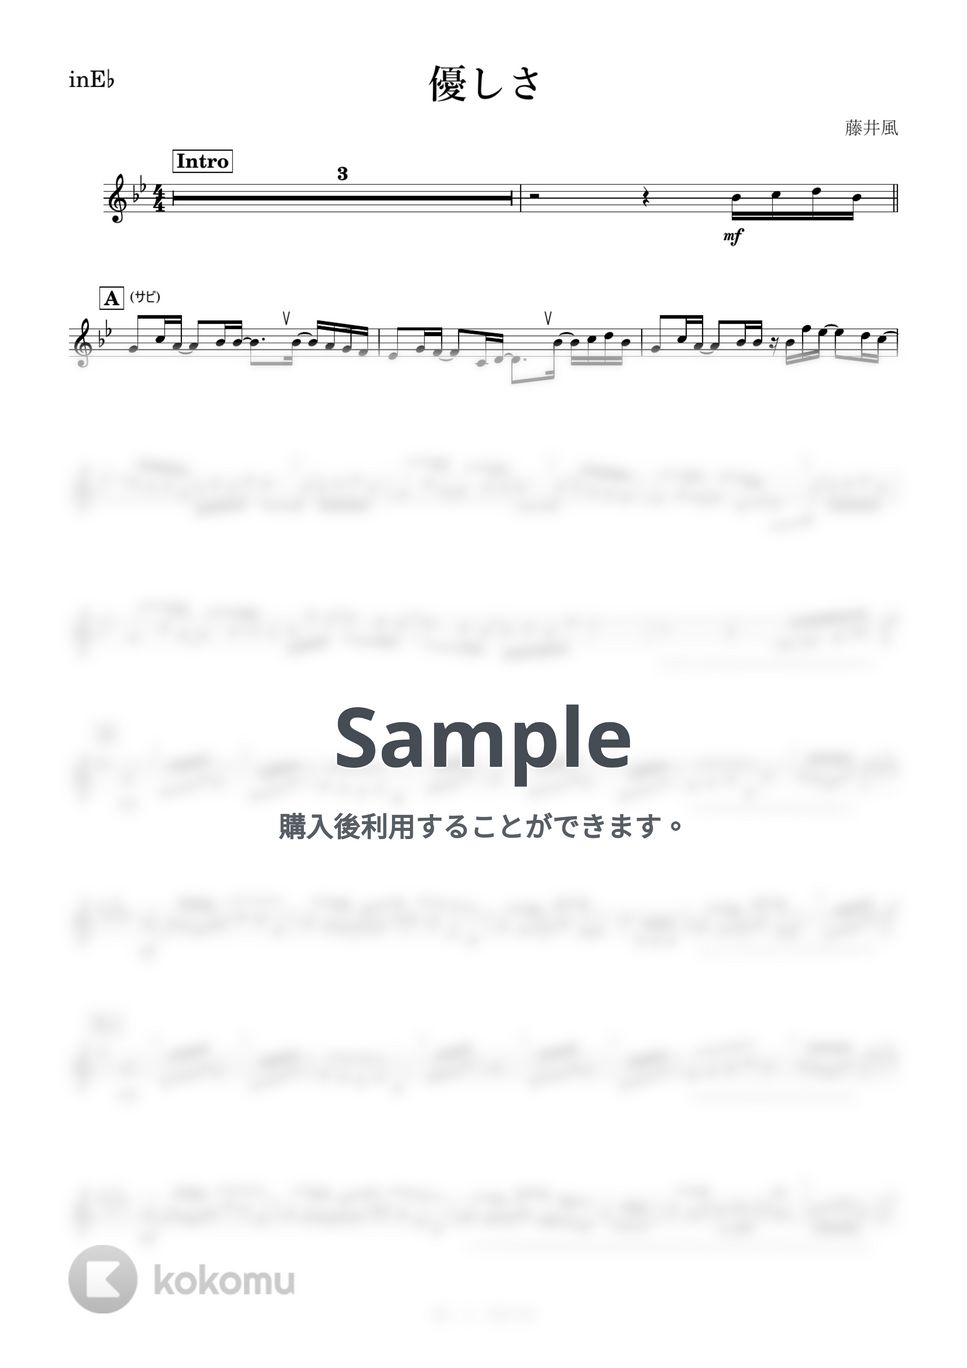 藤井風 - 優しさ (E♭) by kanamusic